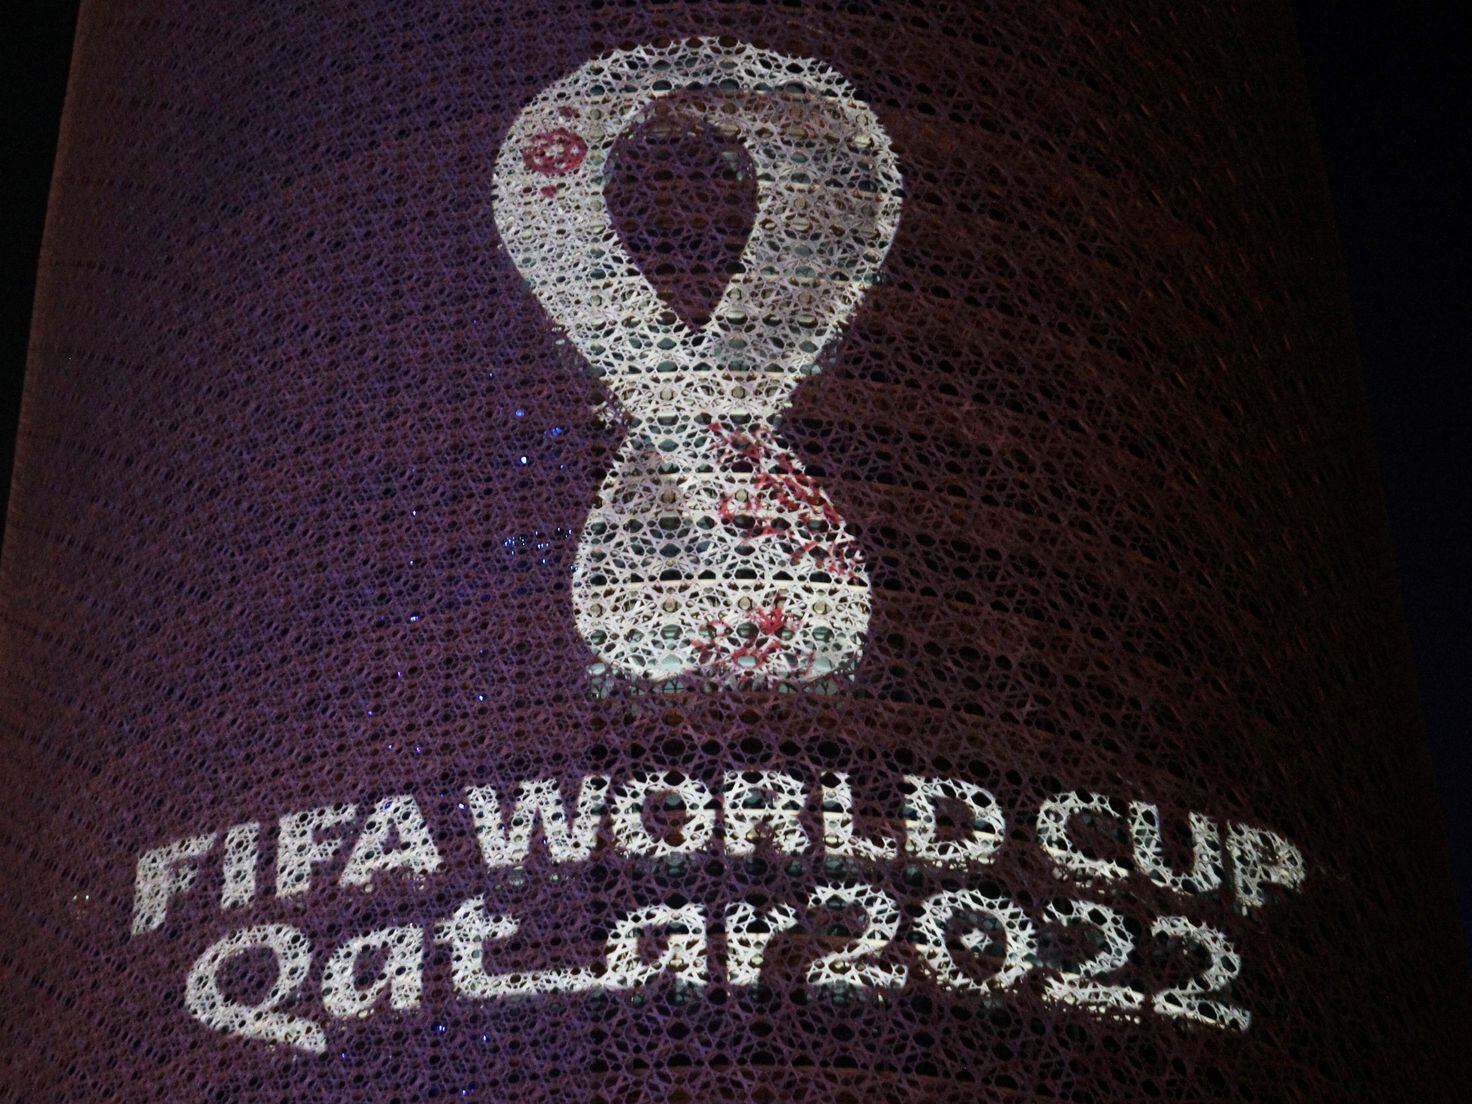 FIFA World Cup Qatar 2022 logo, Logok